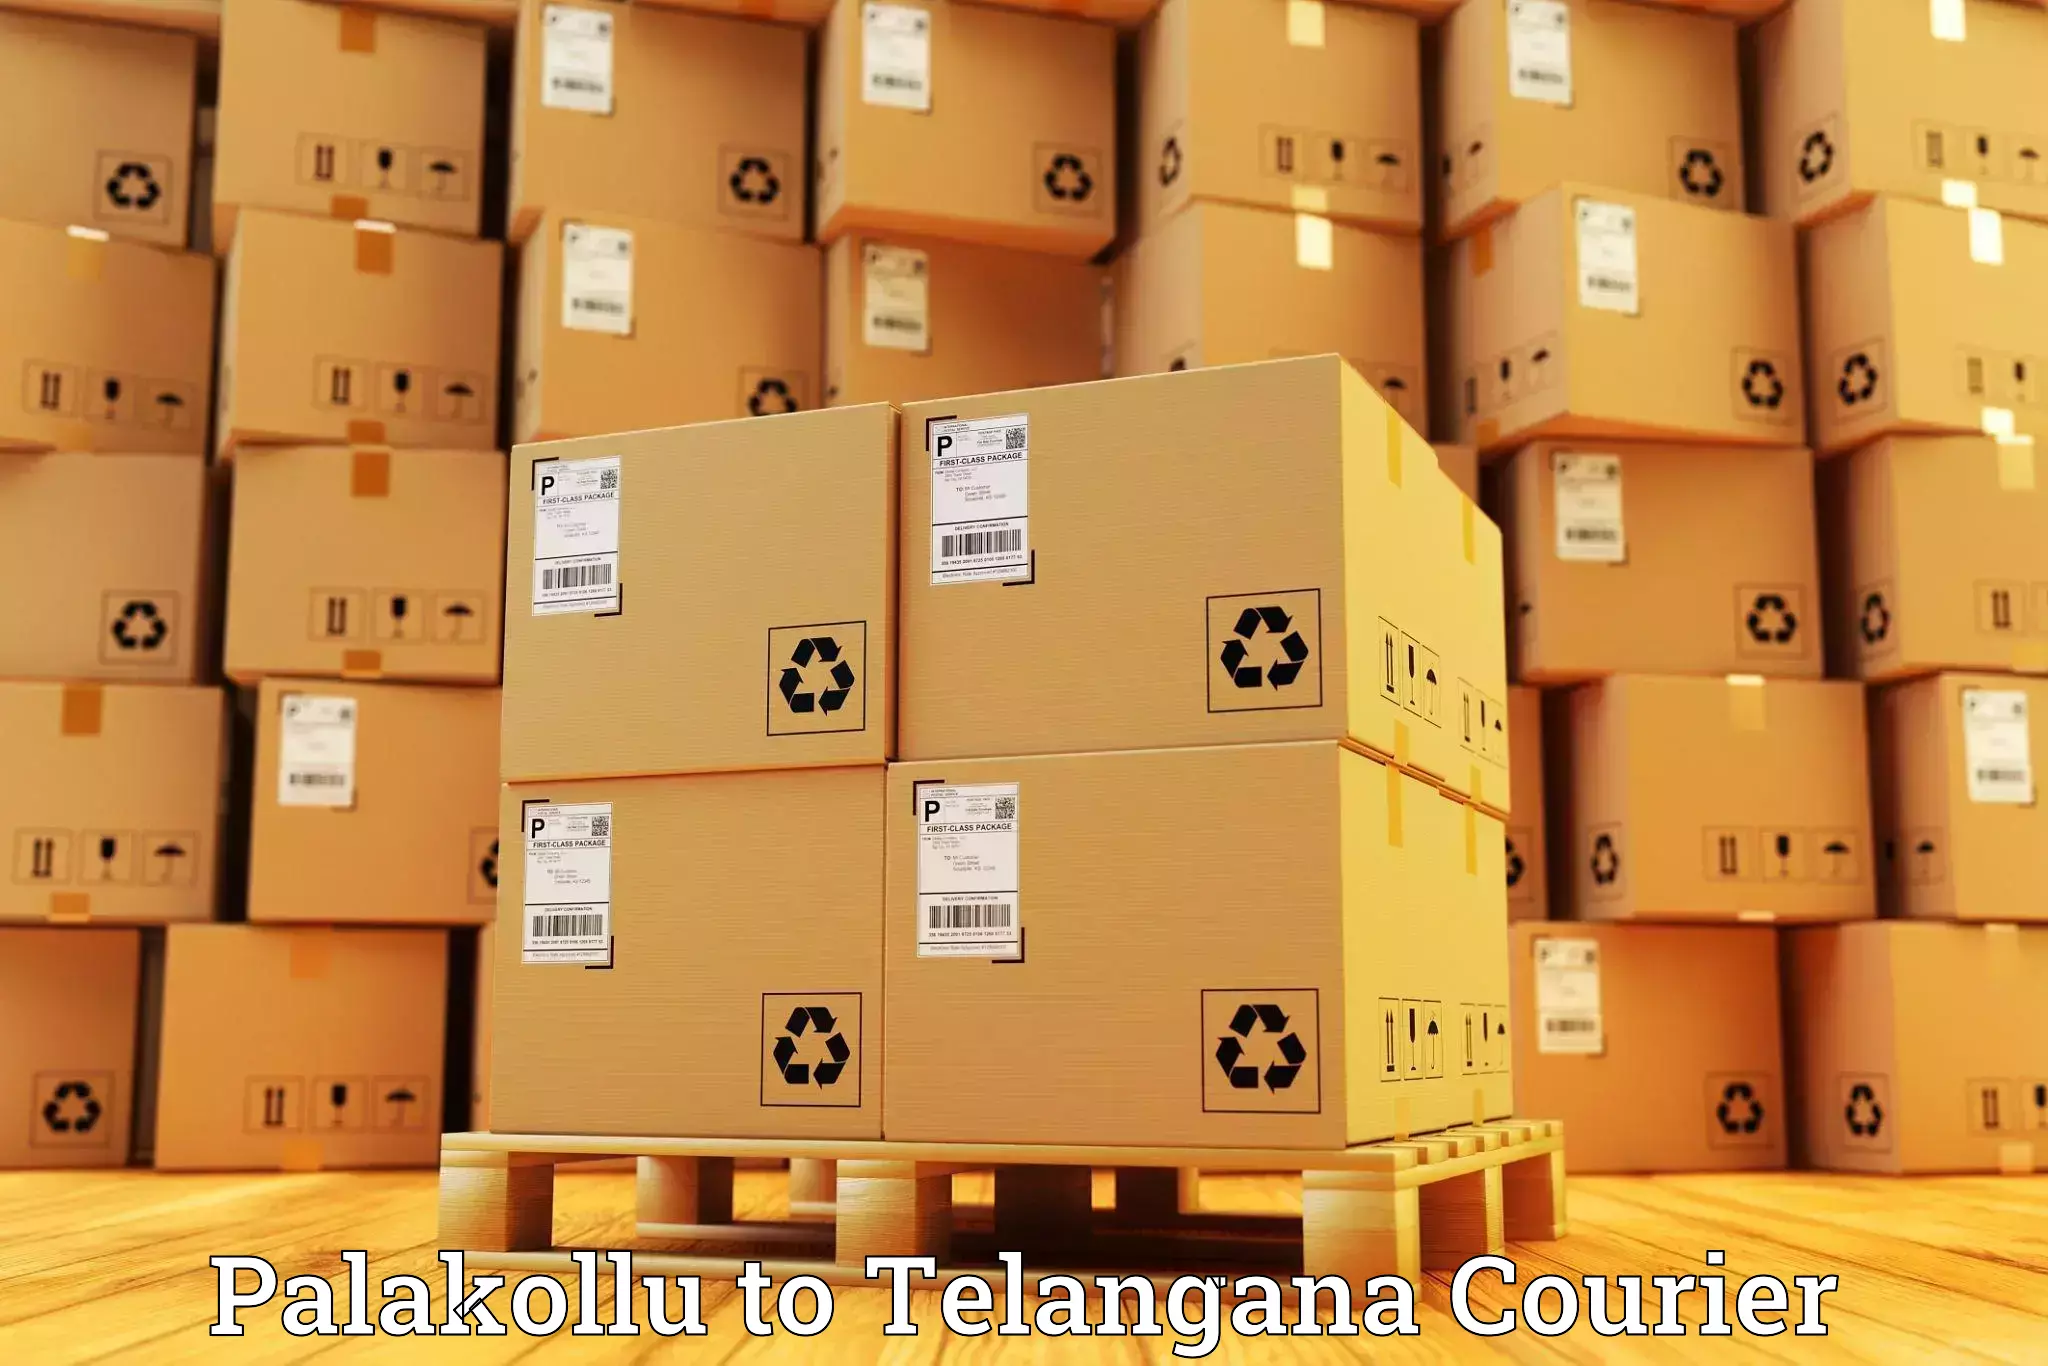 Bulk shipment Palakollu to Ibrahimpatnam